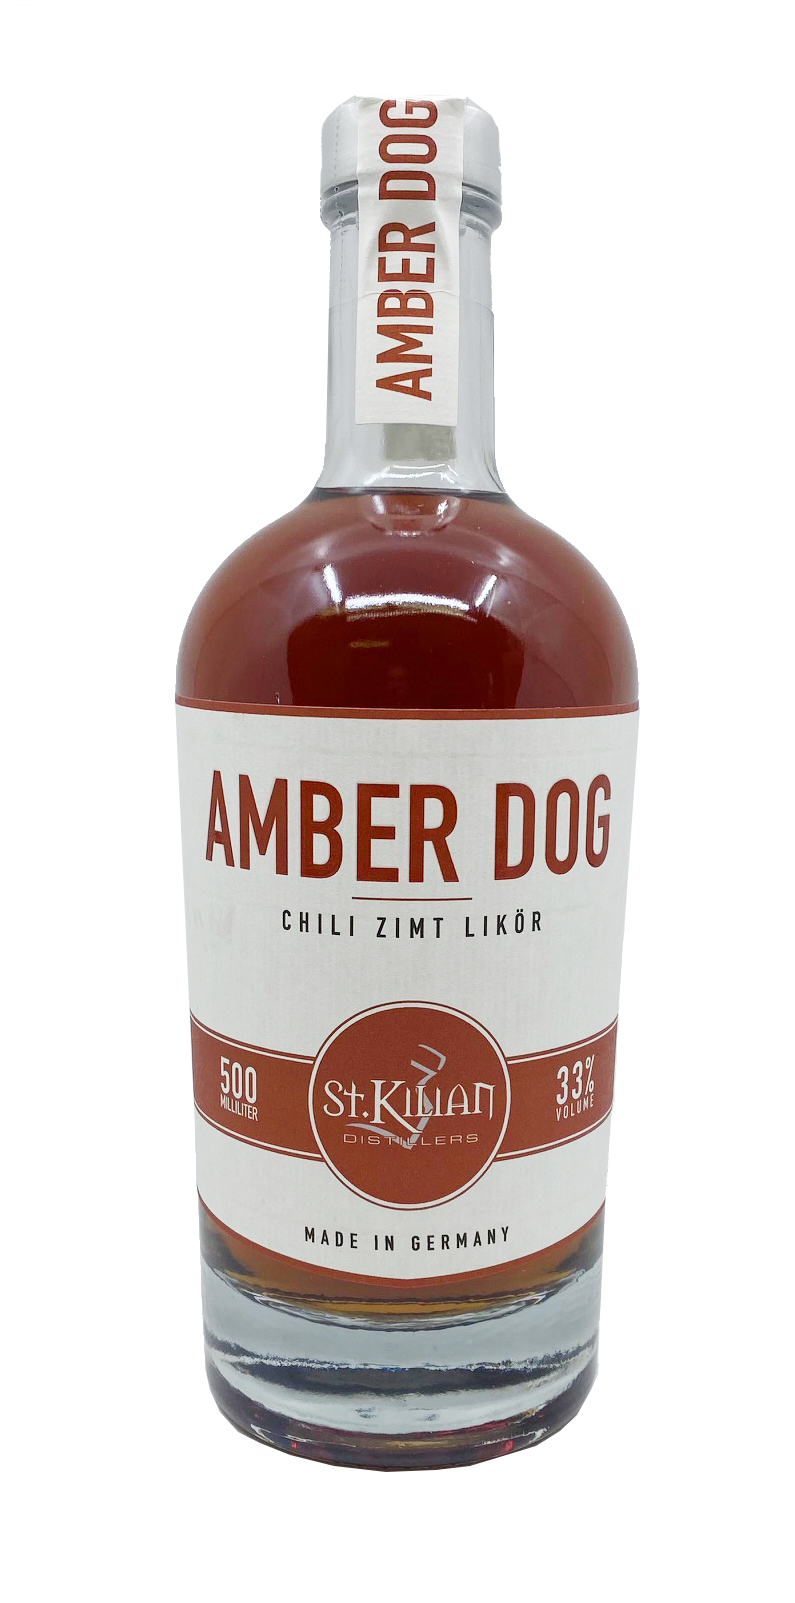 St. Kilian Distillers Amber Dog Chili Zimt Likör 0,5l 33%vol.